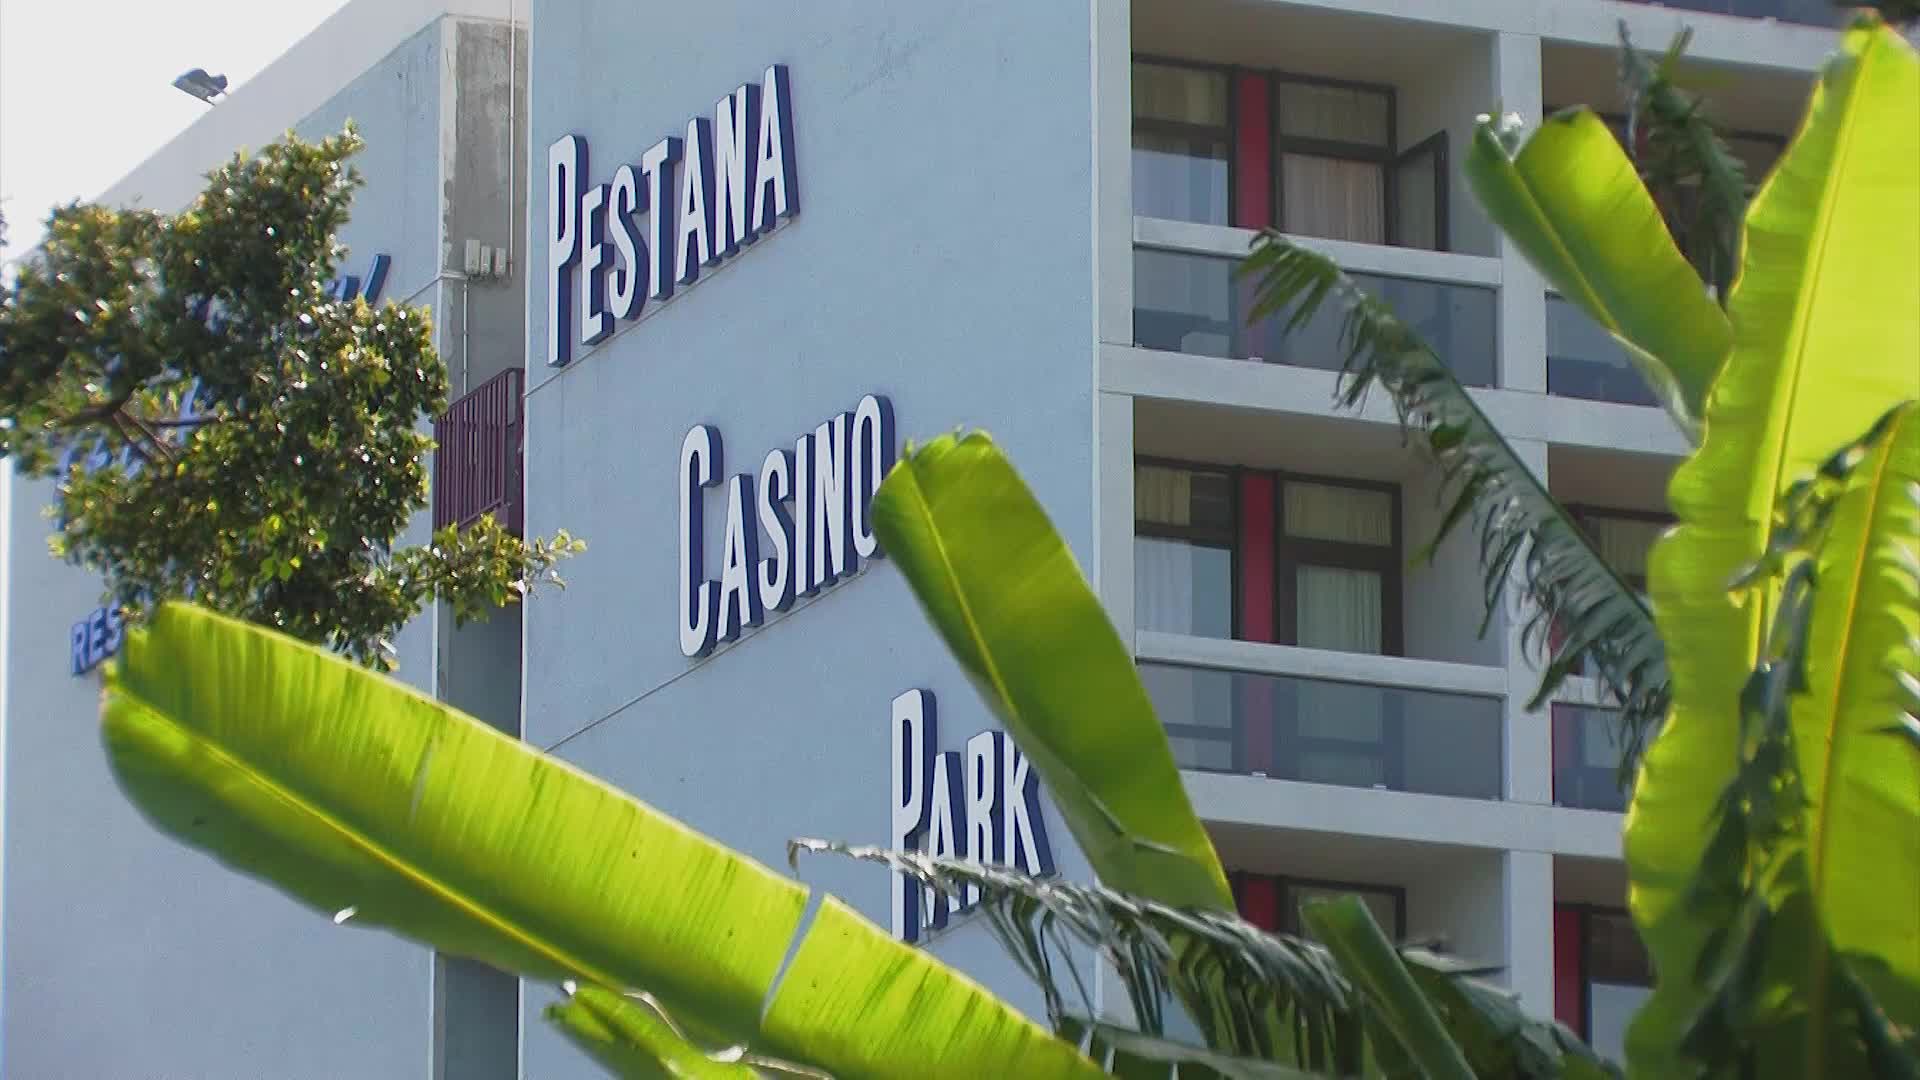 Pestana Casino Park Photo